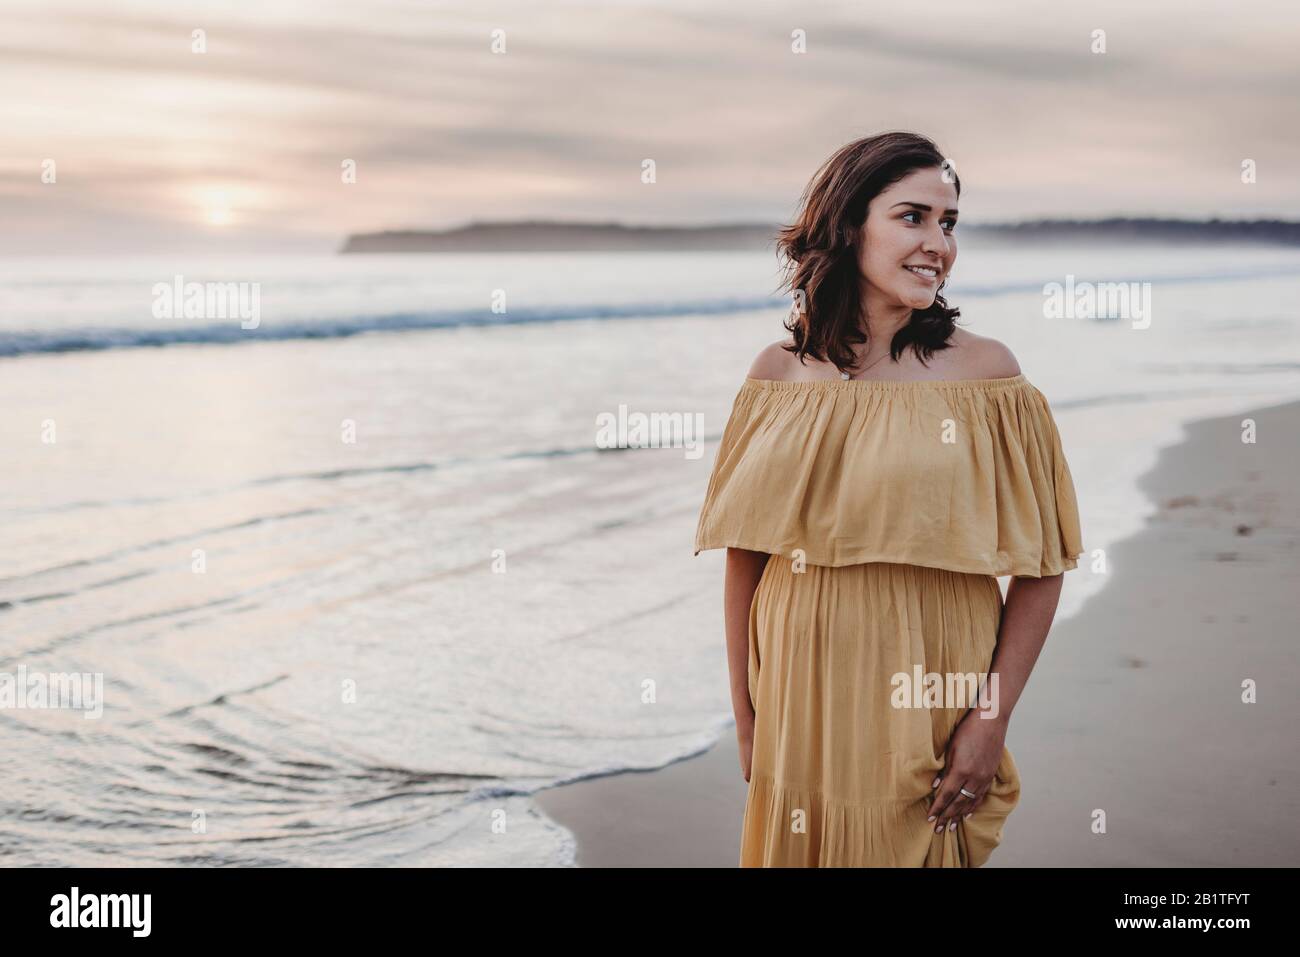 Ritratto lifestyle di giovane donna in piedi sulla spiaggia contro il cielo nuvoloso Foto Stock